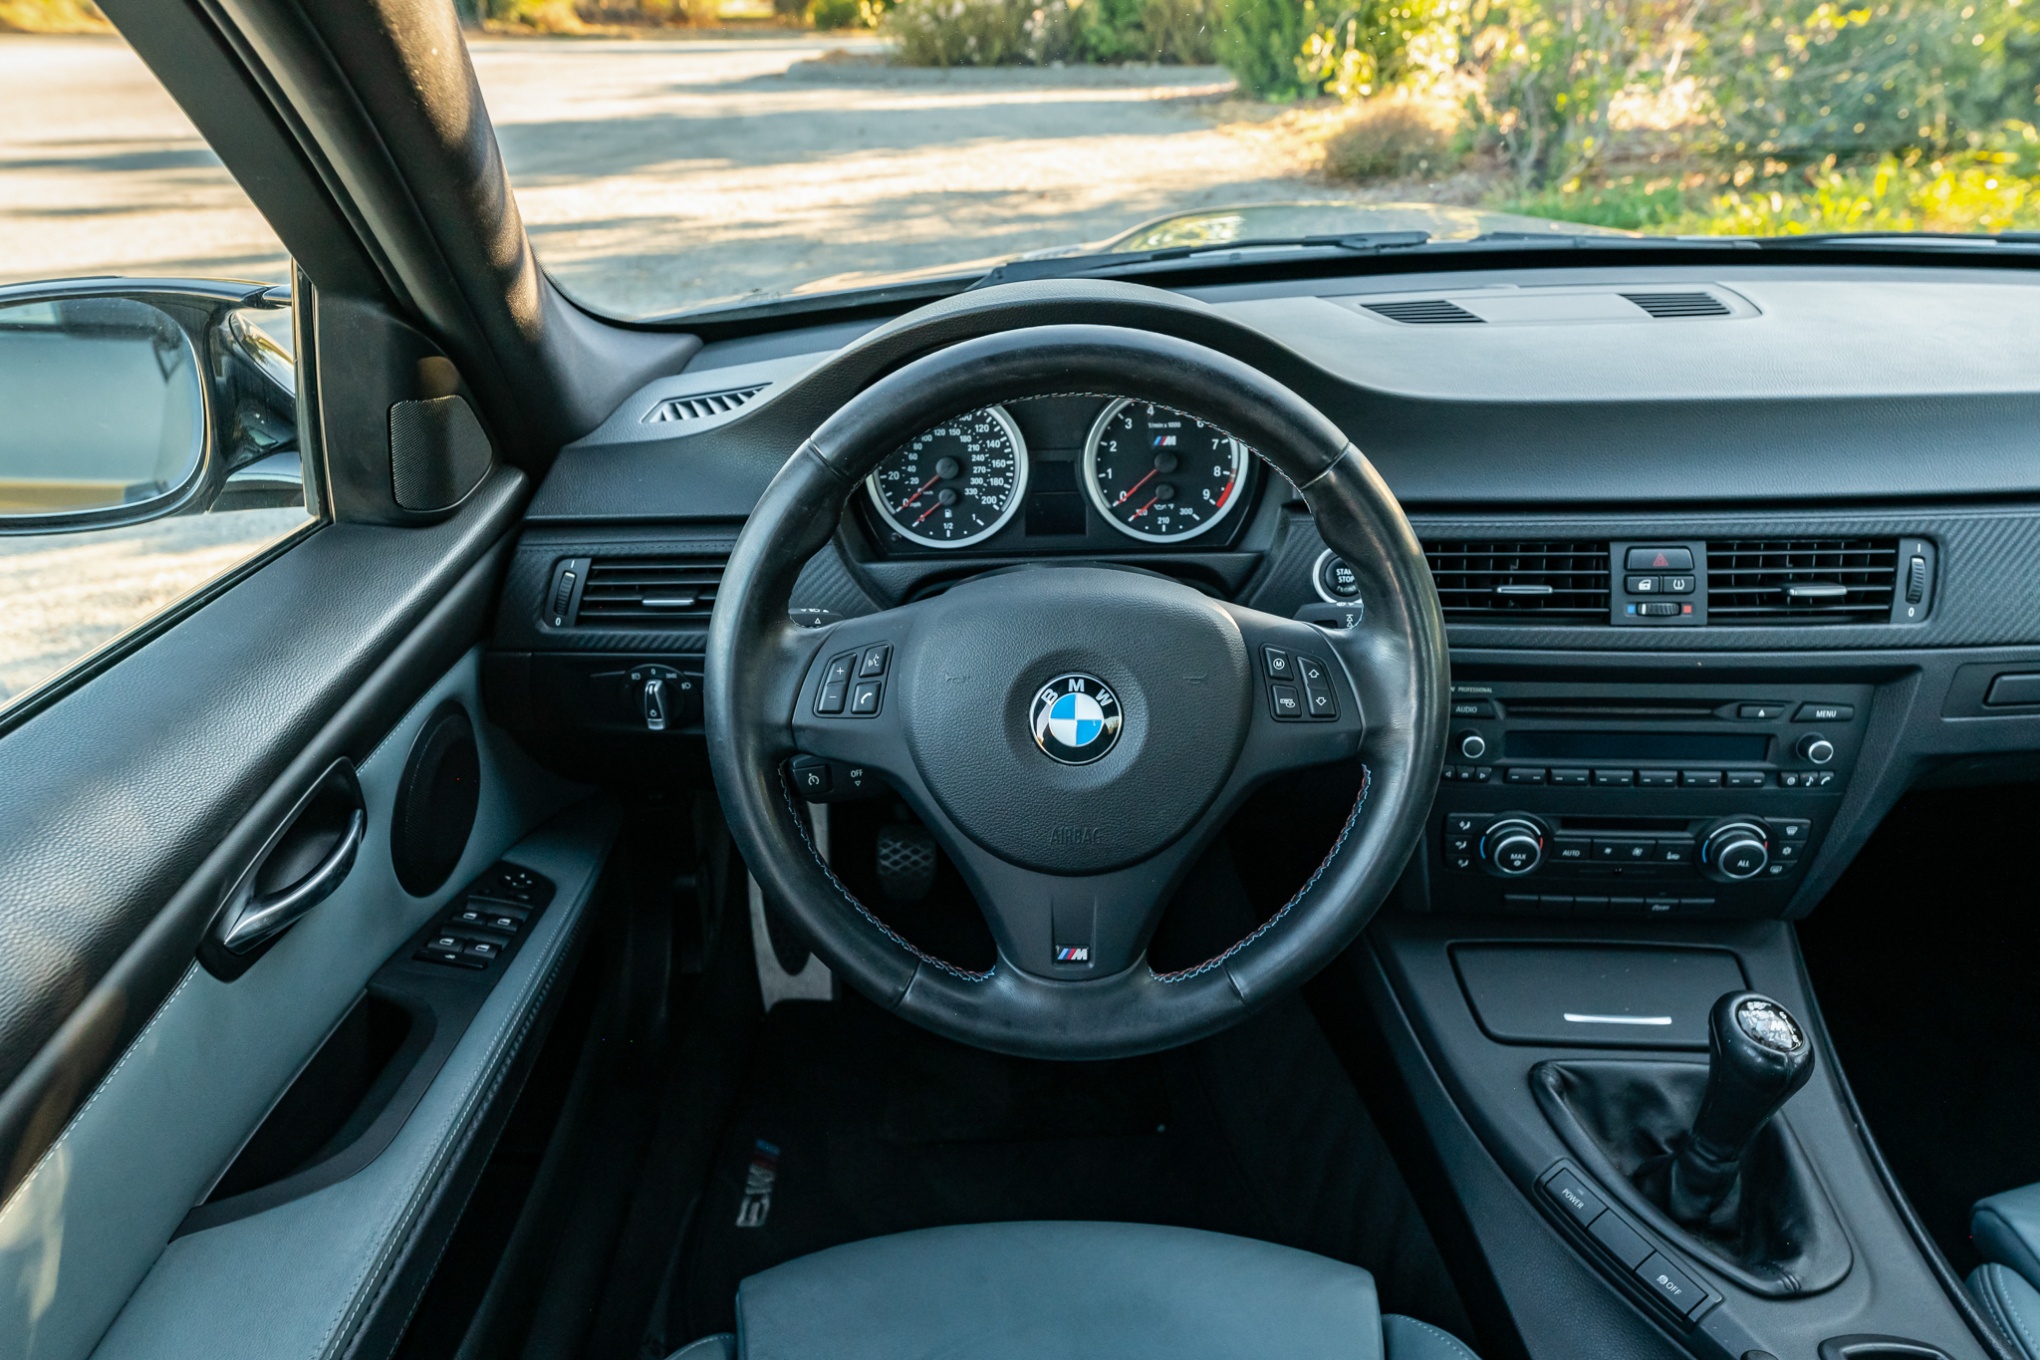 2011 BMW M3 Sedan 6-Speed Sunroof Delete